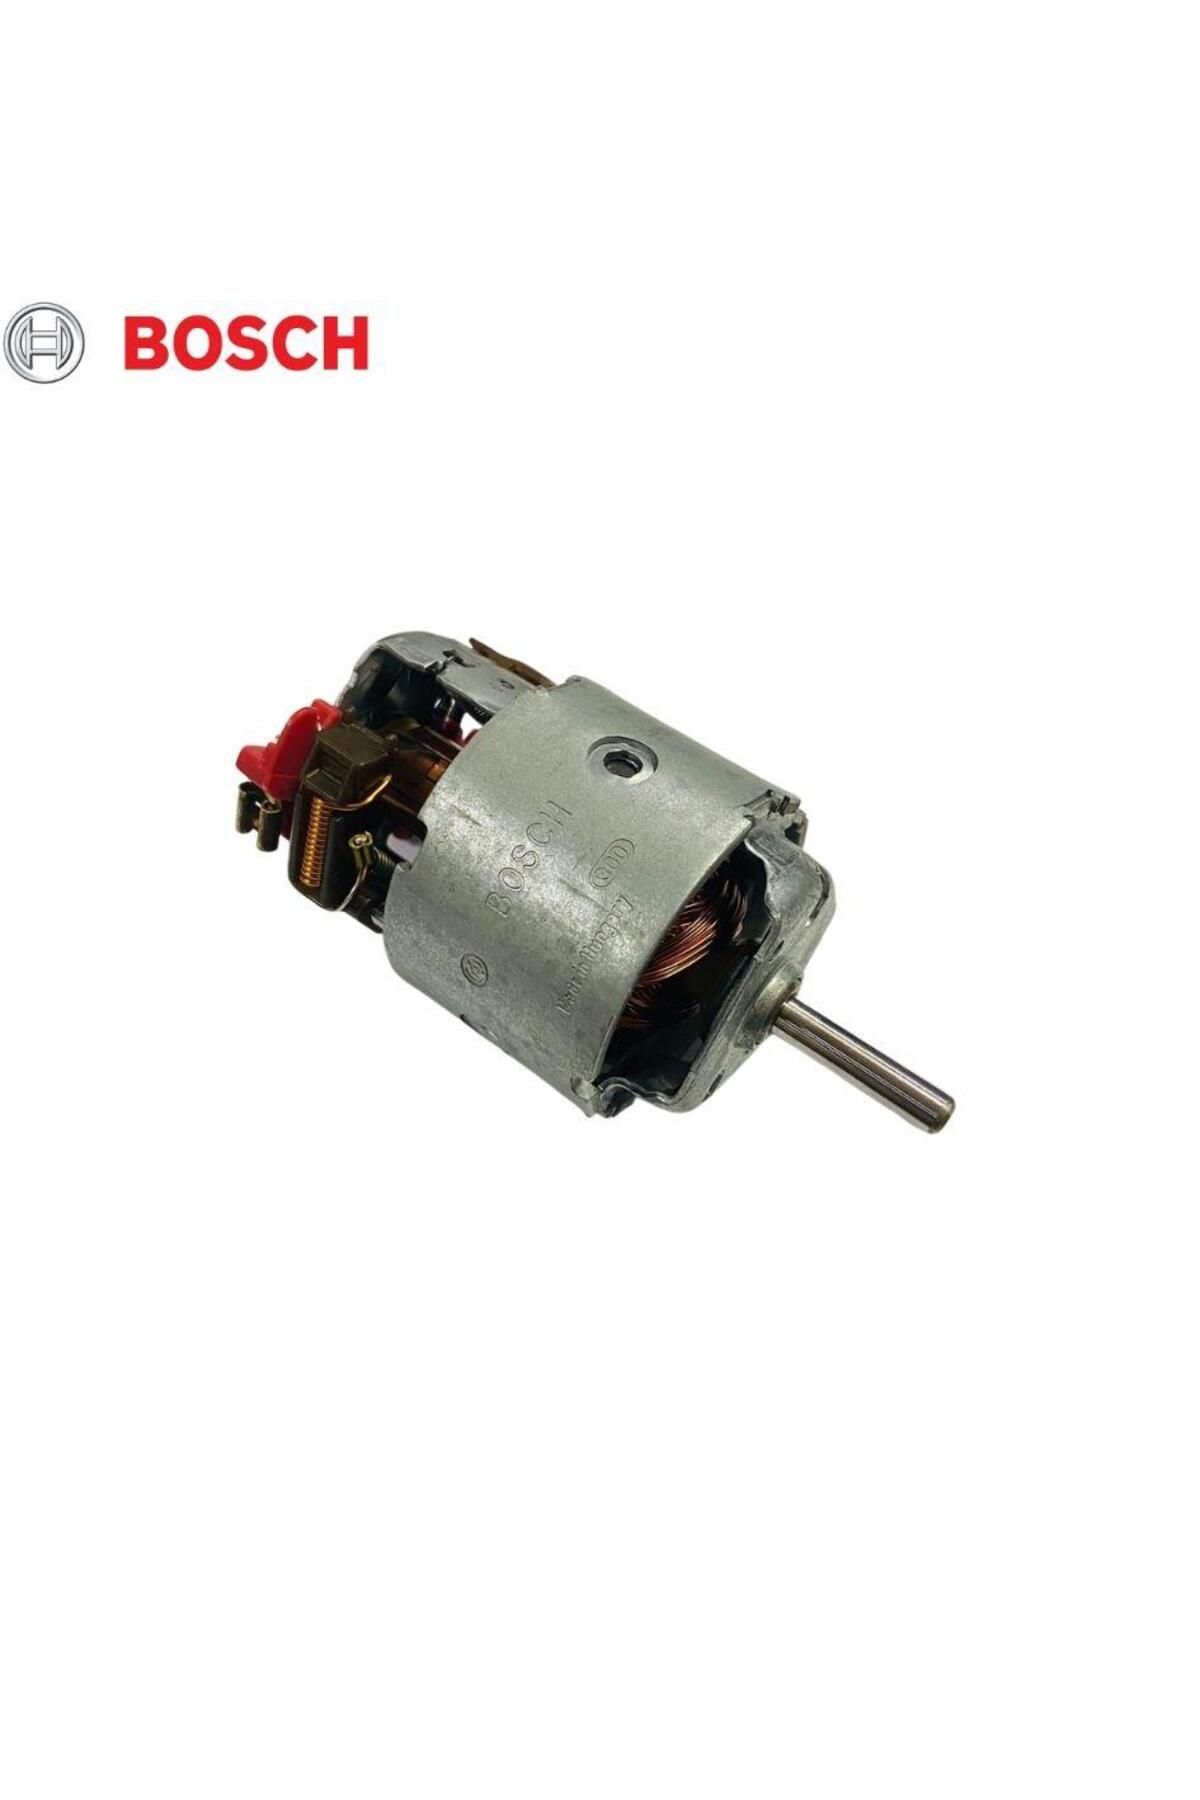 Bosch 12v Kalorifer Motoru Em (KÜÇÜK TİP)